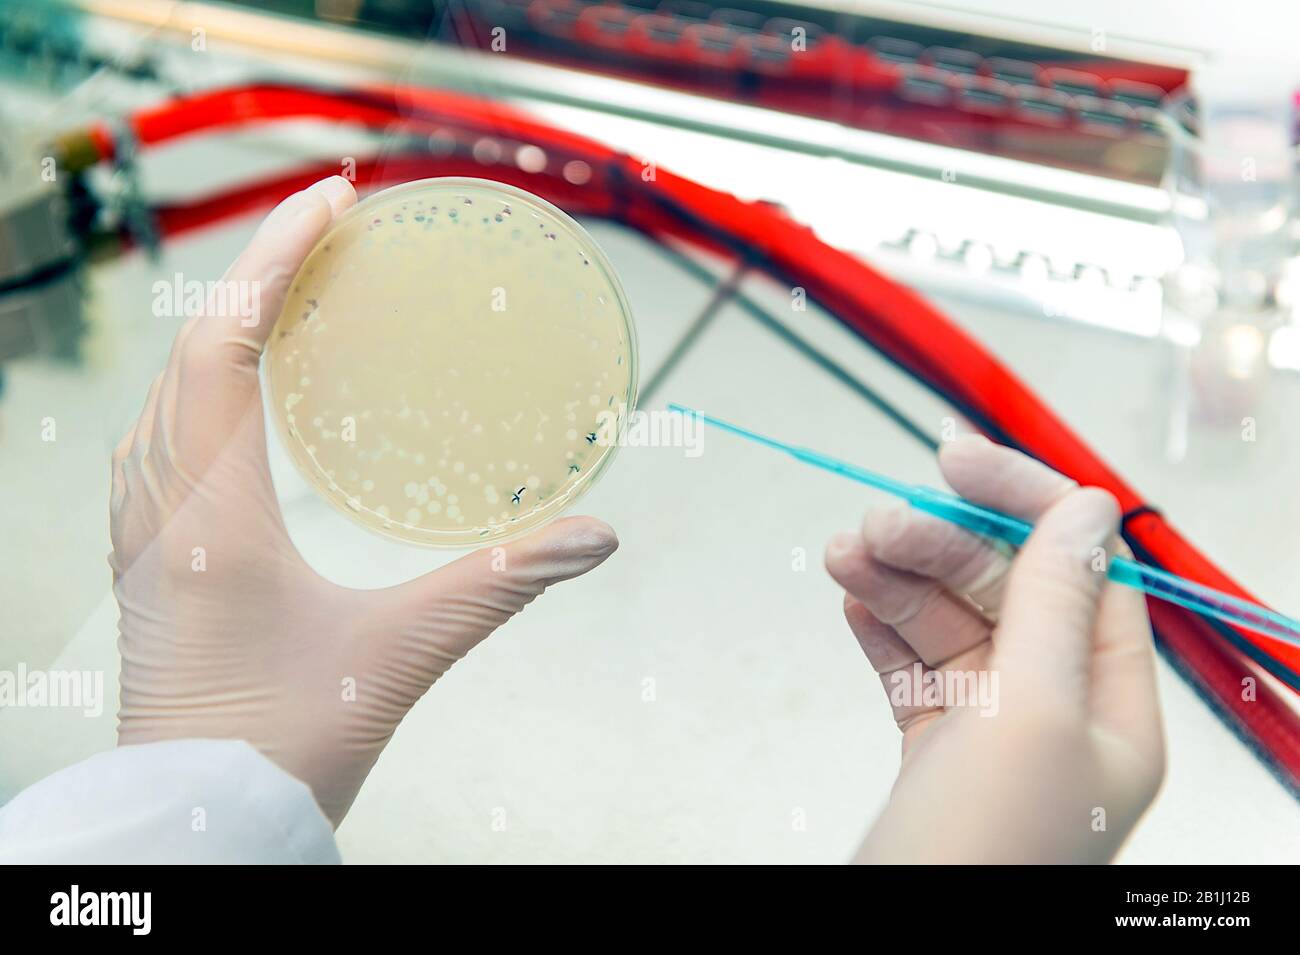 Die Nadel der Hände nimmt Bakteriophagenplakette auf Stockfoto